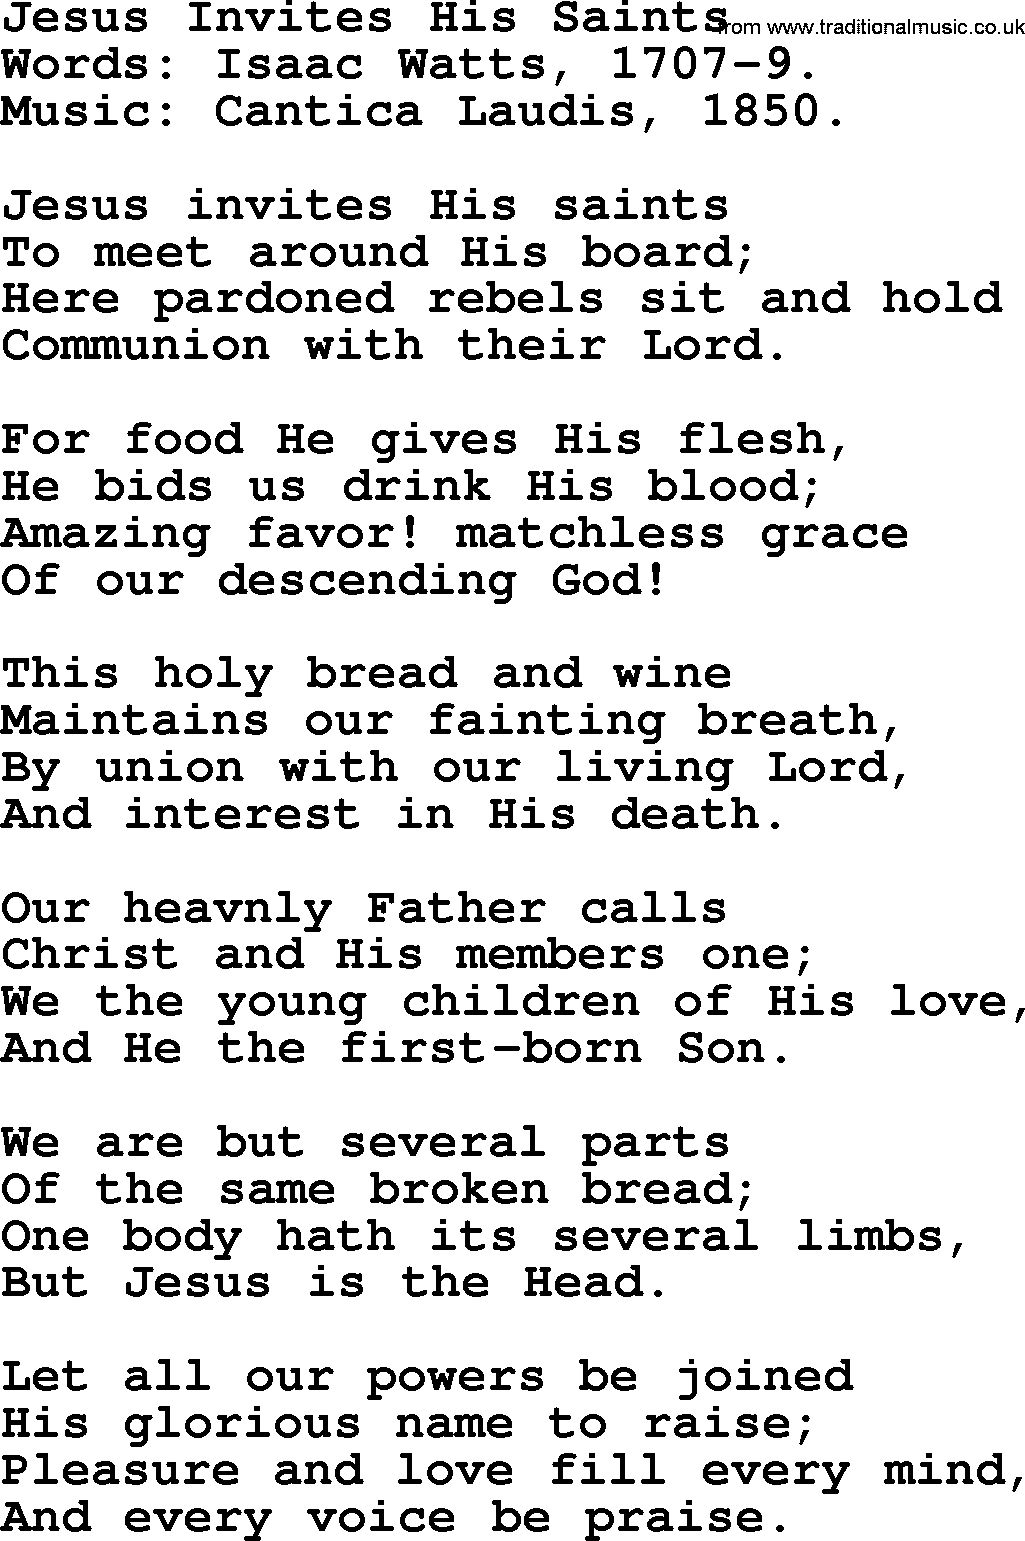 Isaac Watts Christian hymn: Jesus Invites His Saints- lyricss